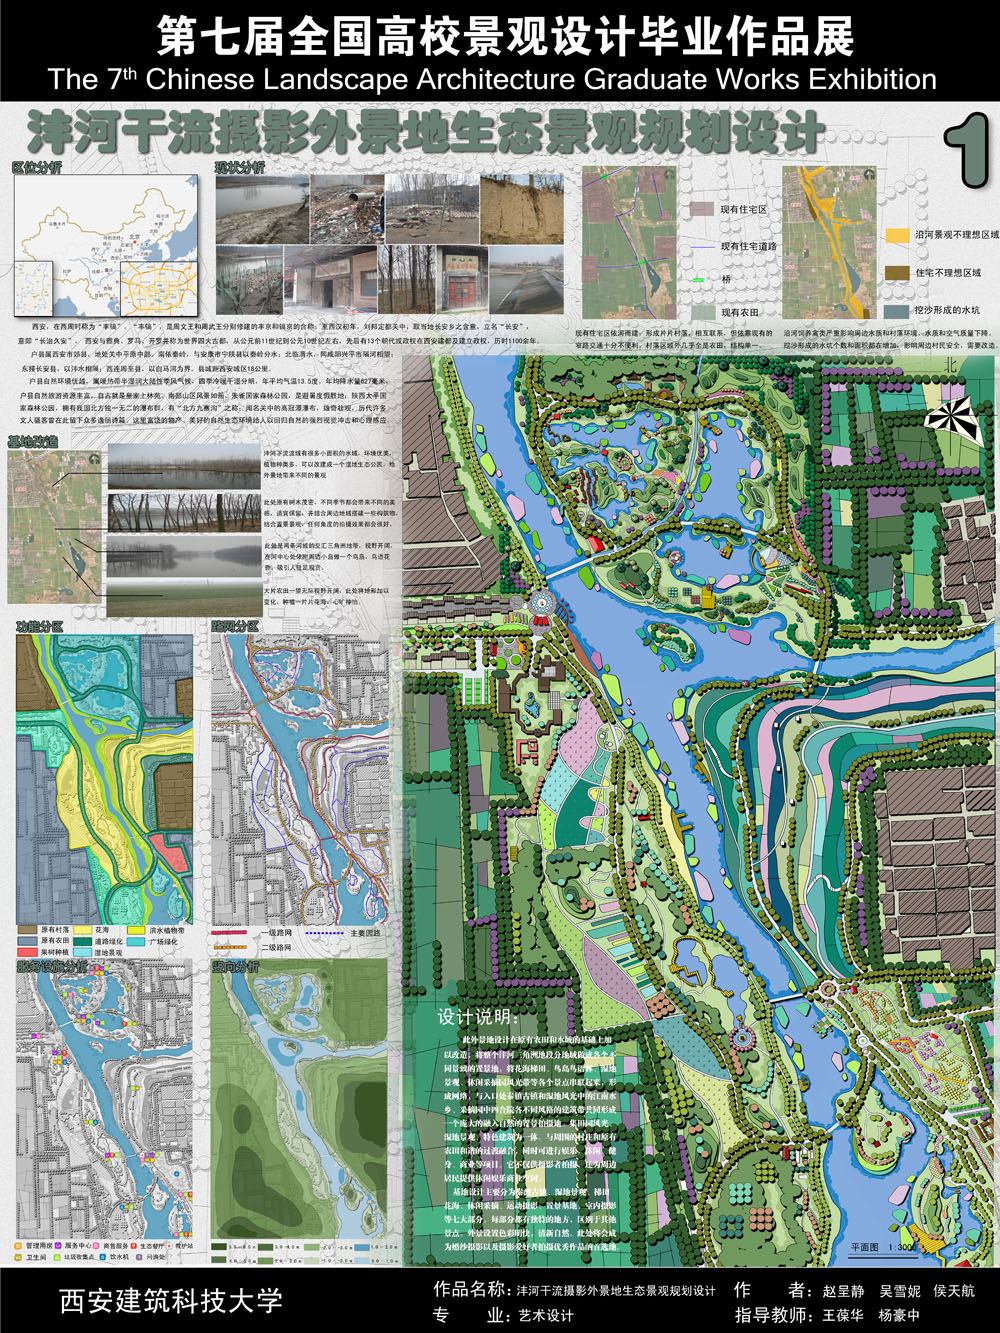 沣河干流摄影外景地生态景观规划设计-1